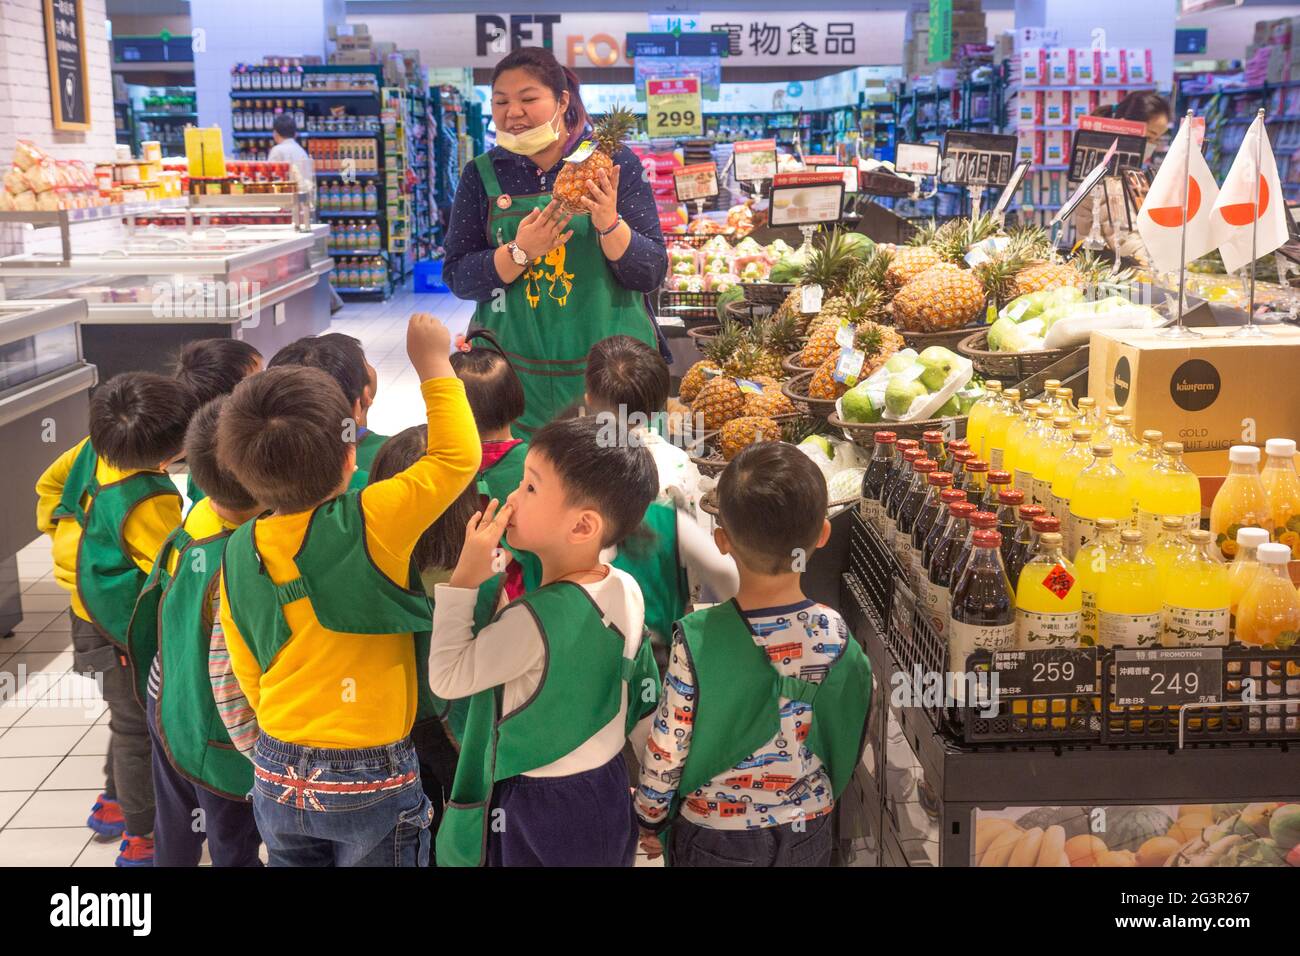 Taipei/Taiwan-25.03.2018: Bambini in escursione nel negozio Foto Stock